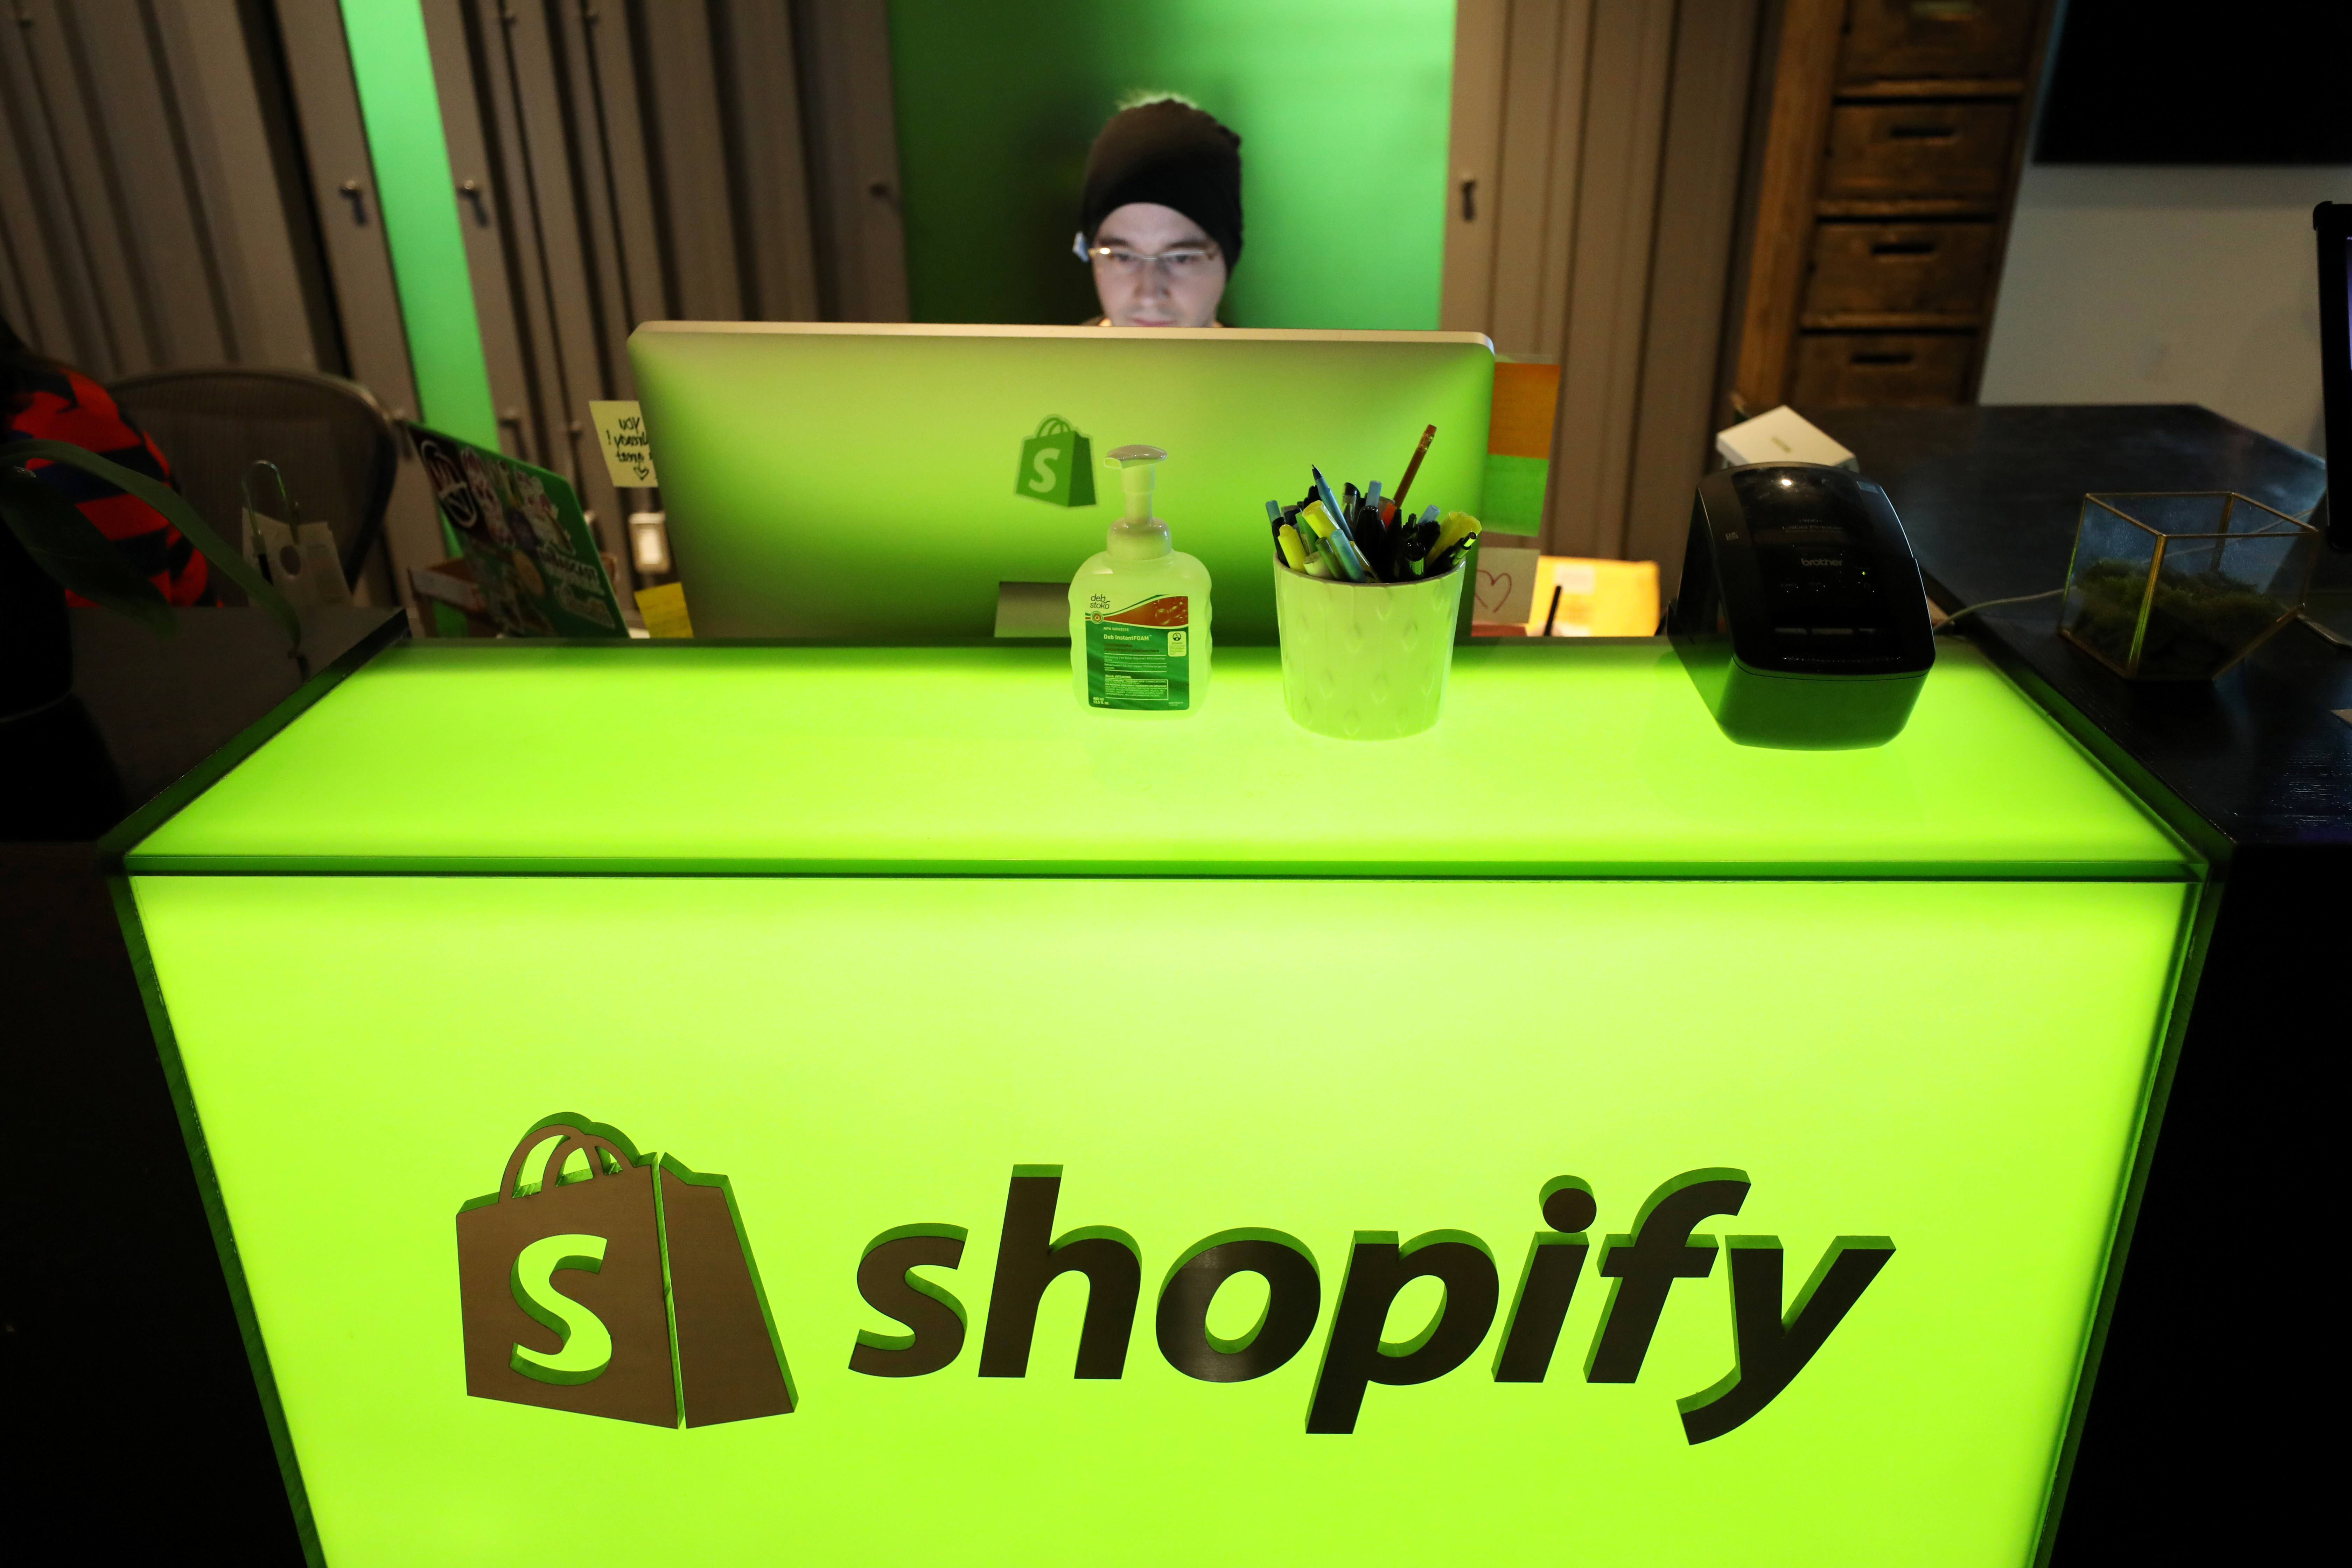 یک کارمند در دفتر مرکزی Shopify در اتاوا، انتاریو، کانادا، 22 اکتبر 2018 کار می کند. رویترز/کریس واتی